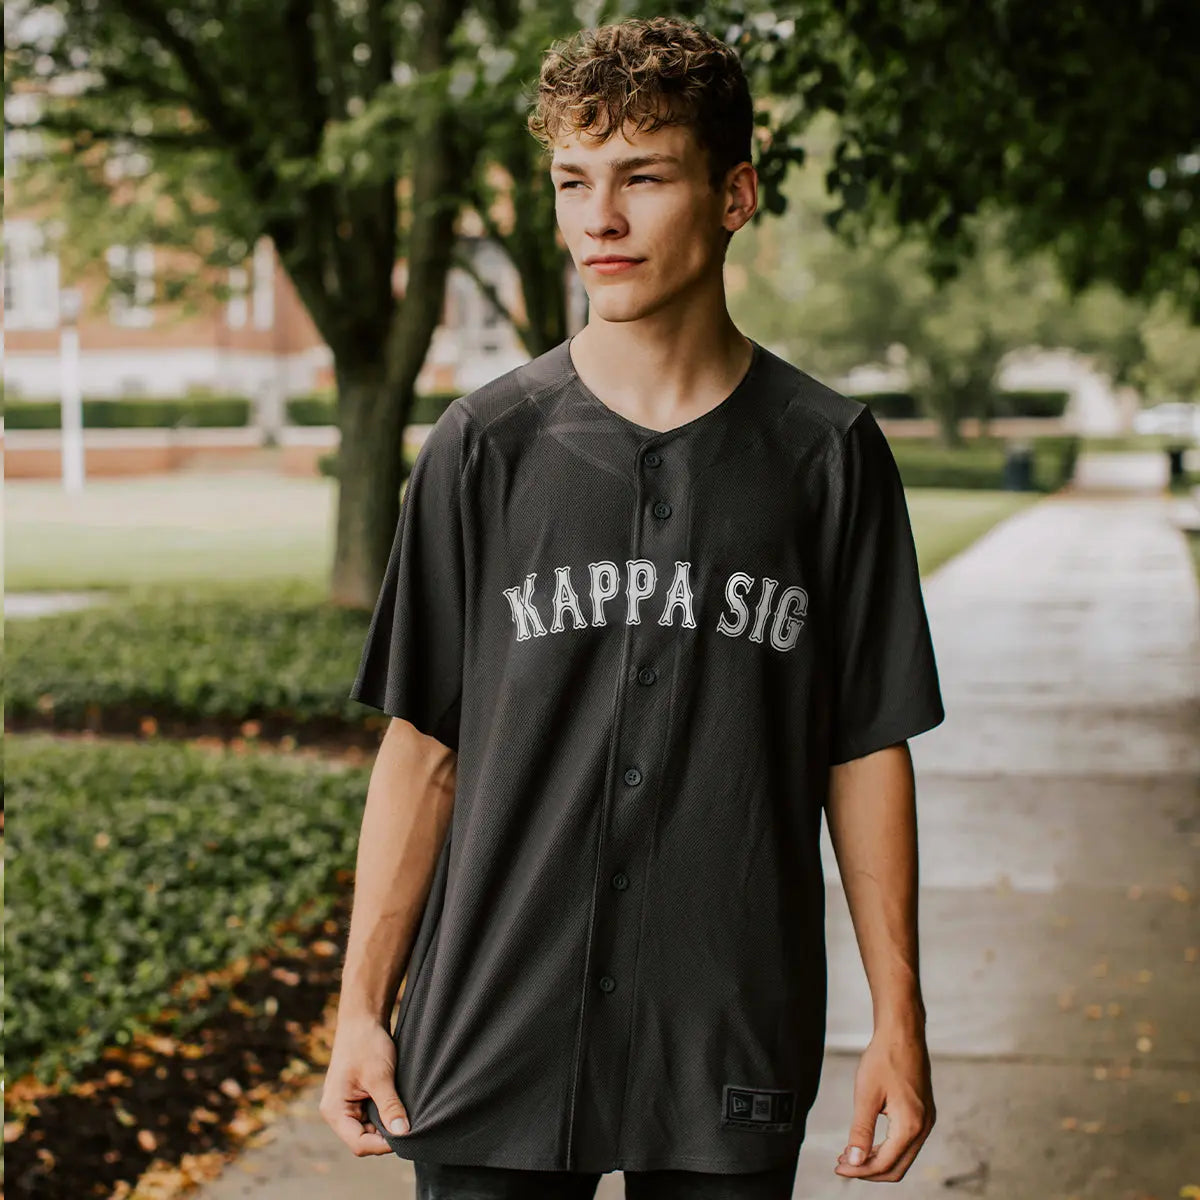 Kappa Sig Personalized New Era Graphite Baseball Jersey – Kappa Sigma  Official Store